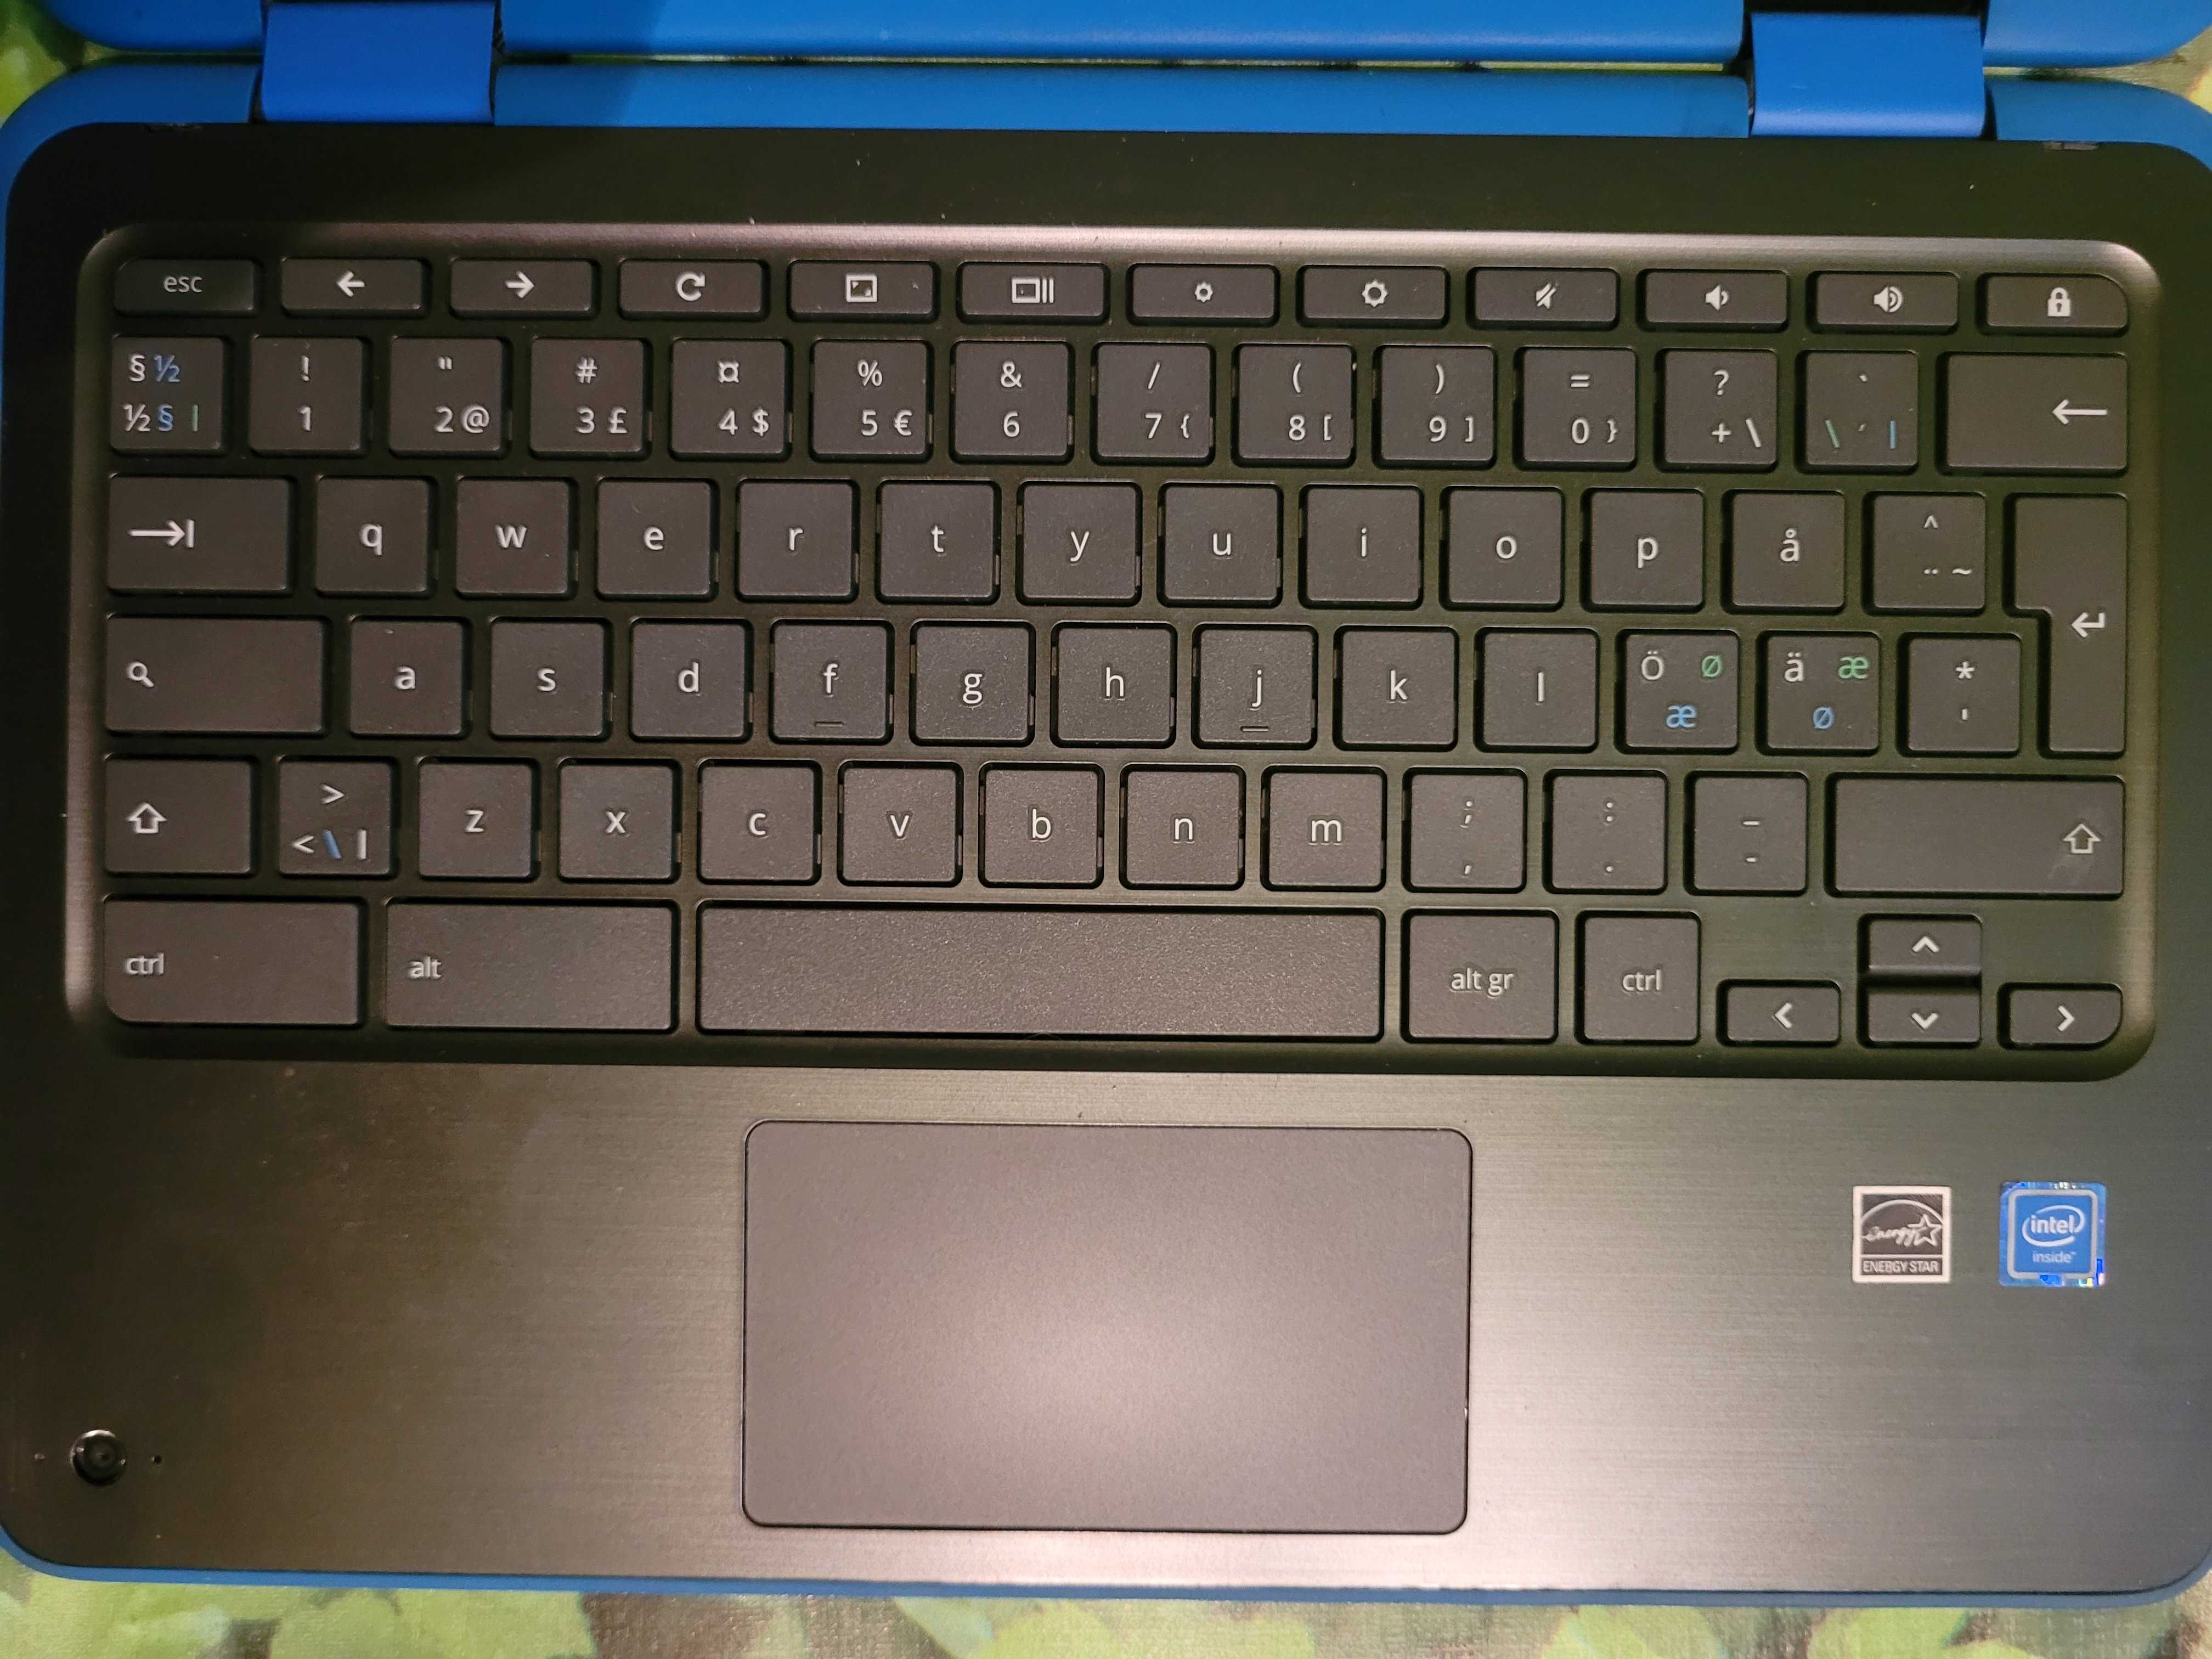 HP Chromebook 11 x360 G2 - 2w1 laptop/tablet, okazja - jak nowy